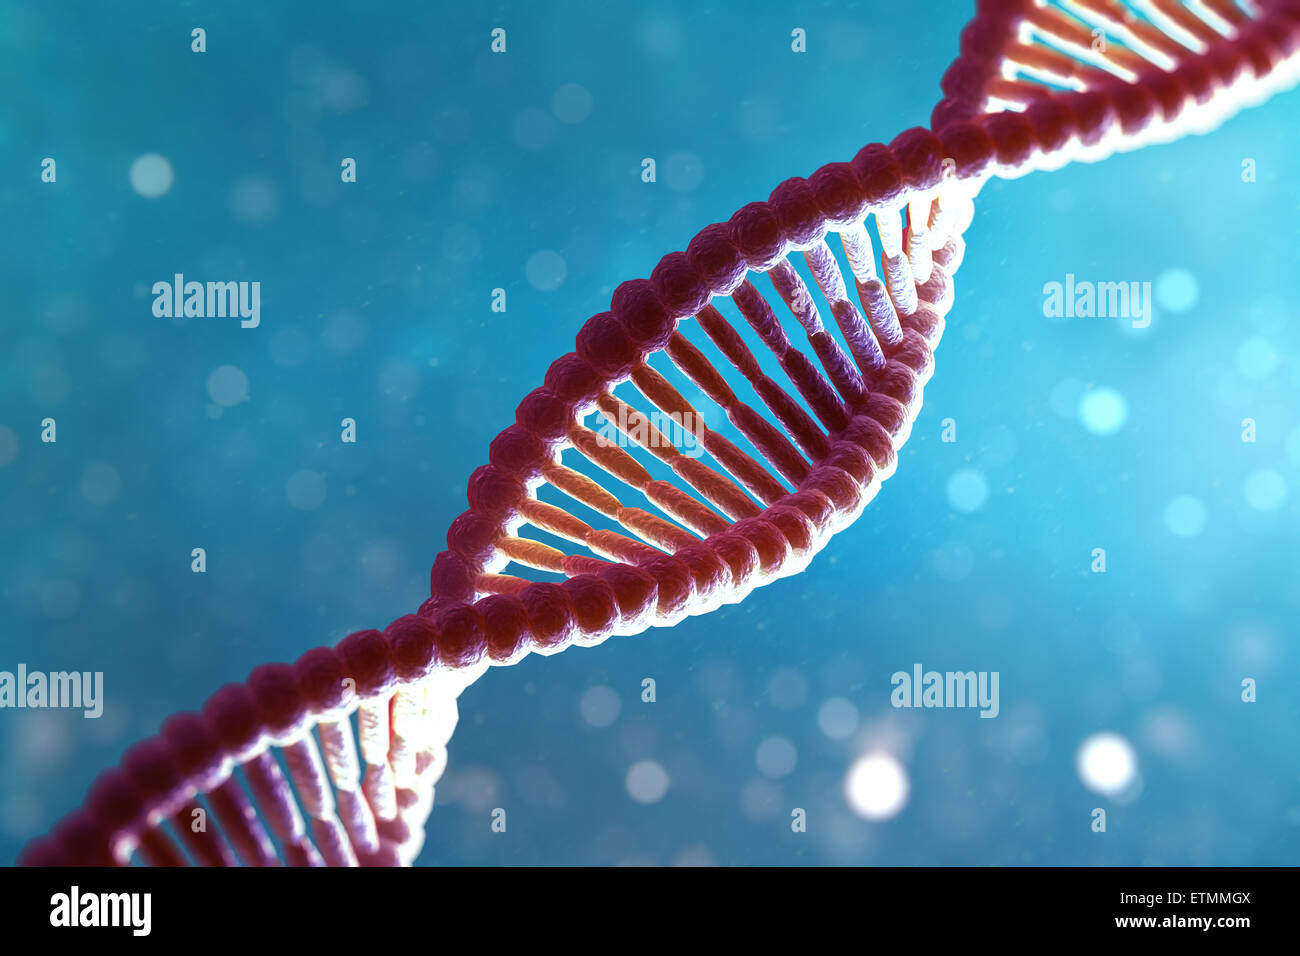 Illustration stylisée de brins de l'ADN humain, l'acide désoxyribonucléique. Banque D'Images